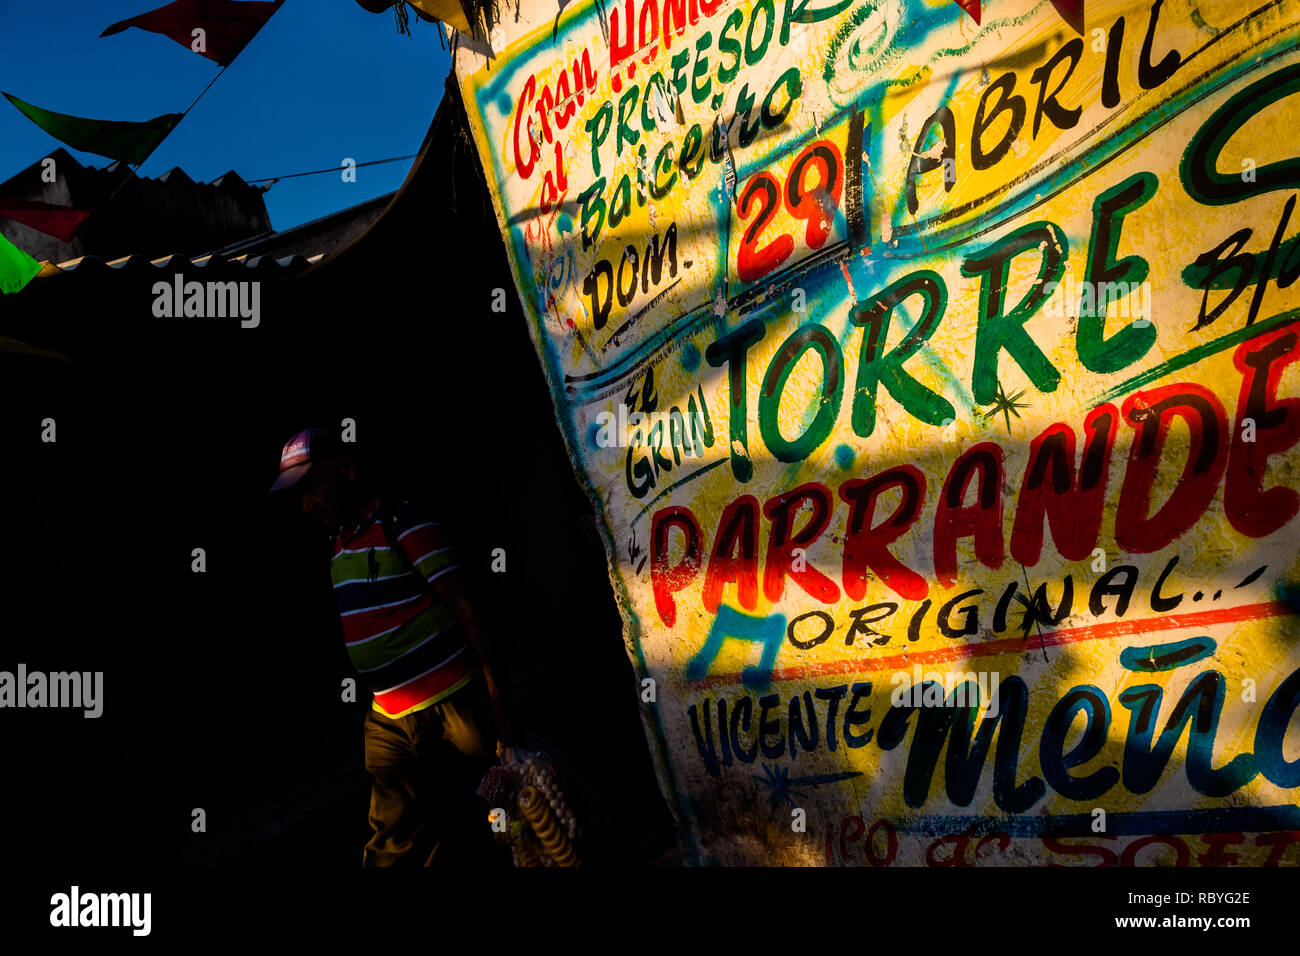 Eine Musik Partei Propaganda, durch die Runner die kollektive geschaffen wurde, ist an der Wand in Bazurto Markt in Cartagena, Kolumbien, lackiert. Stockfoto